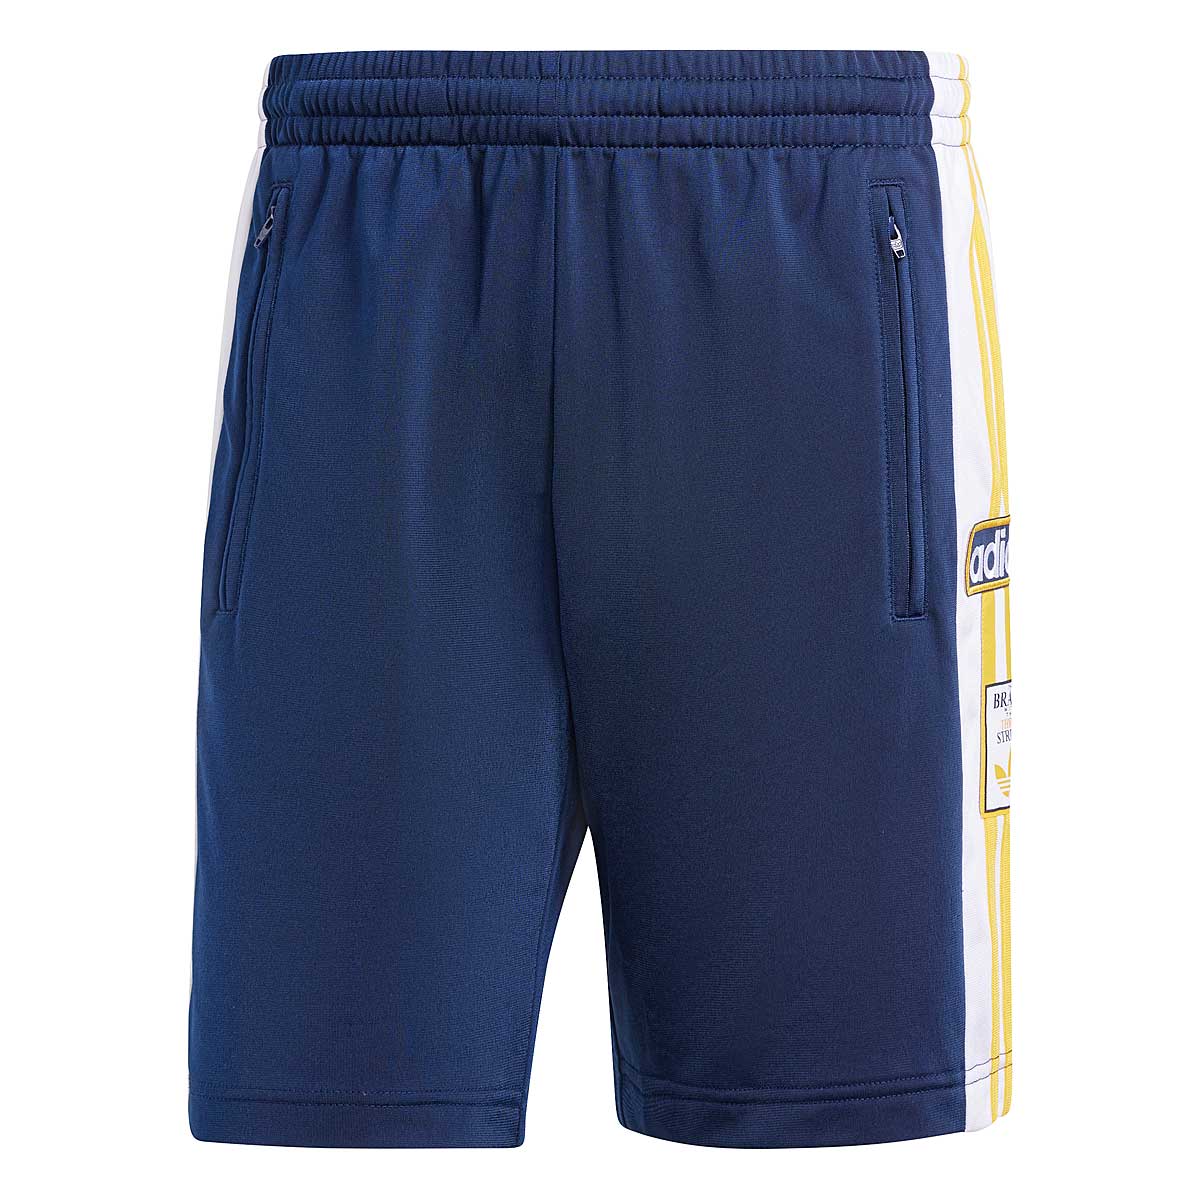 Adidas Adibreak Shorts, Blau 2XL